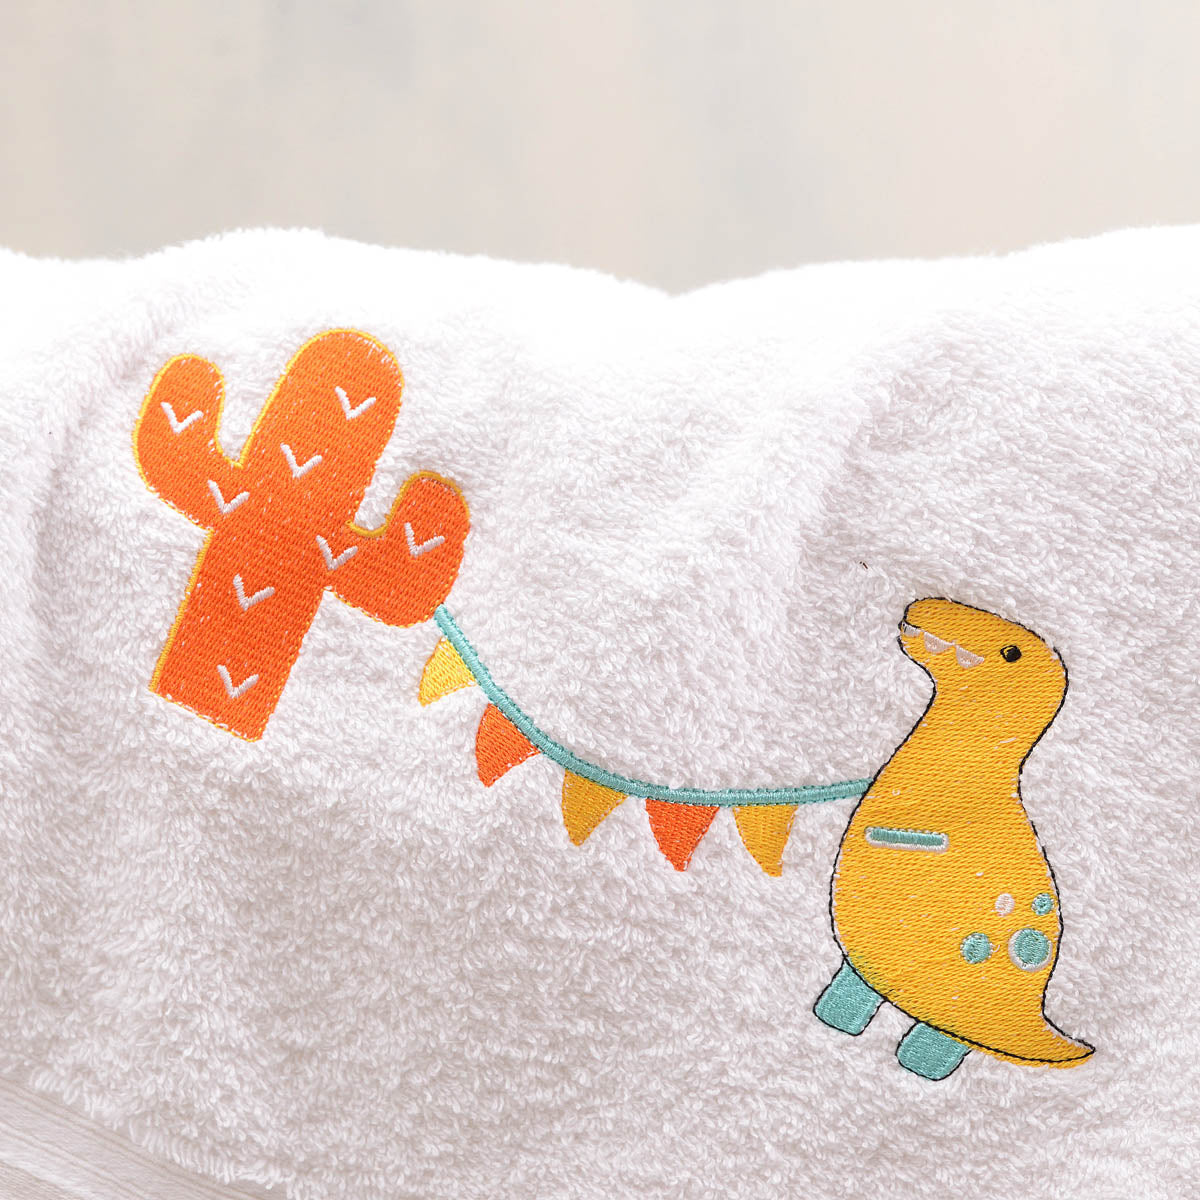 DIEGO ΚΙΤΡΙΝΟ - Σετ πετσέτες παιδικές 2 τεμ. από την εταιρεία Rythmos Home